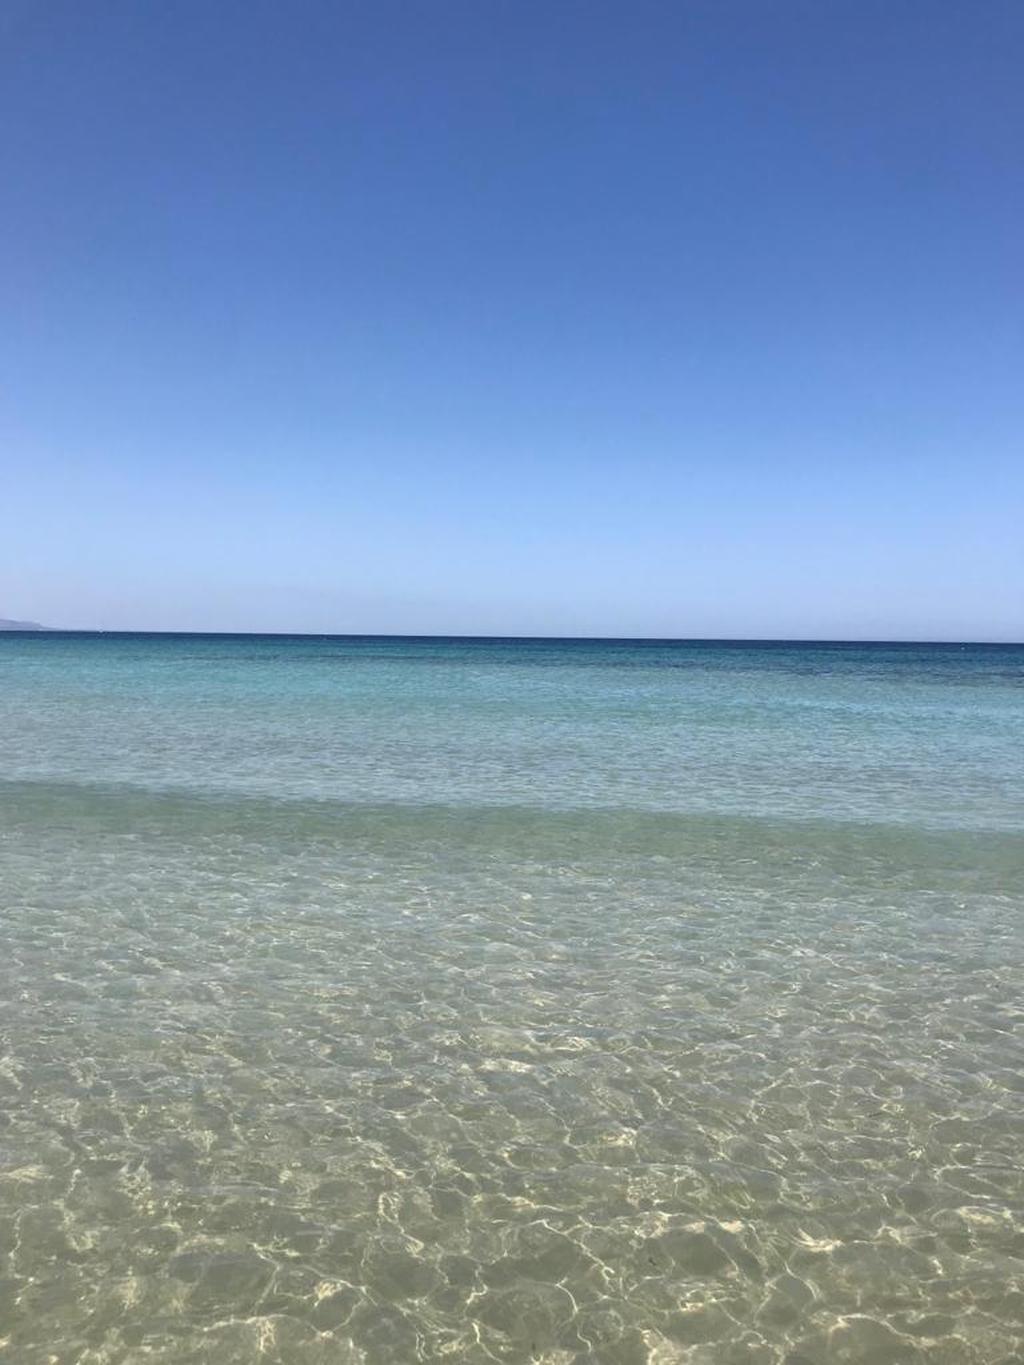 Spiaggia Spinazza - Fondo Morte, (Siracusa), Sicilia